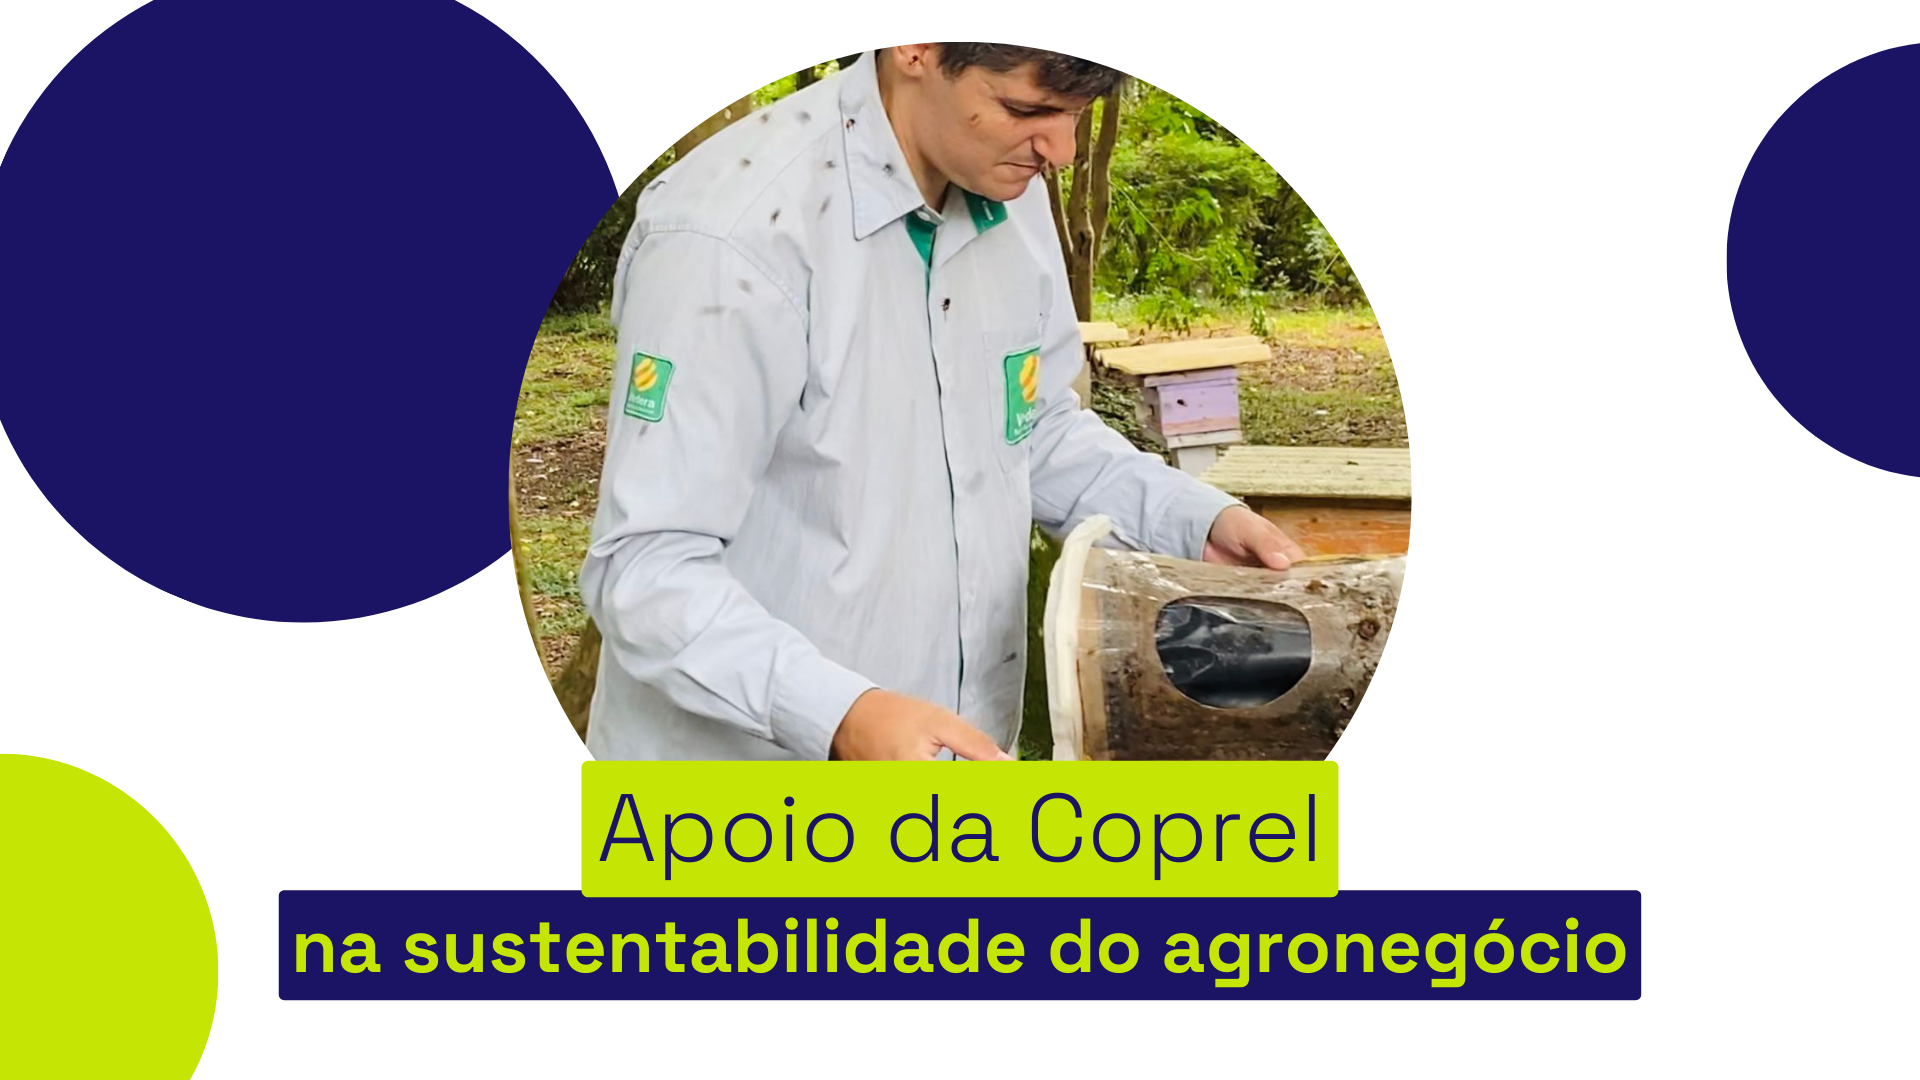 Coprel apoia projetos que garantem a sustentabilidade ao agronegócio